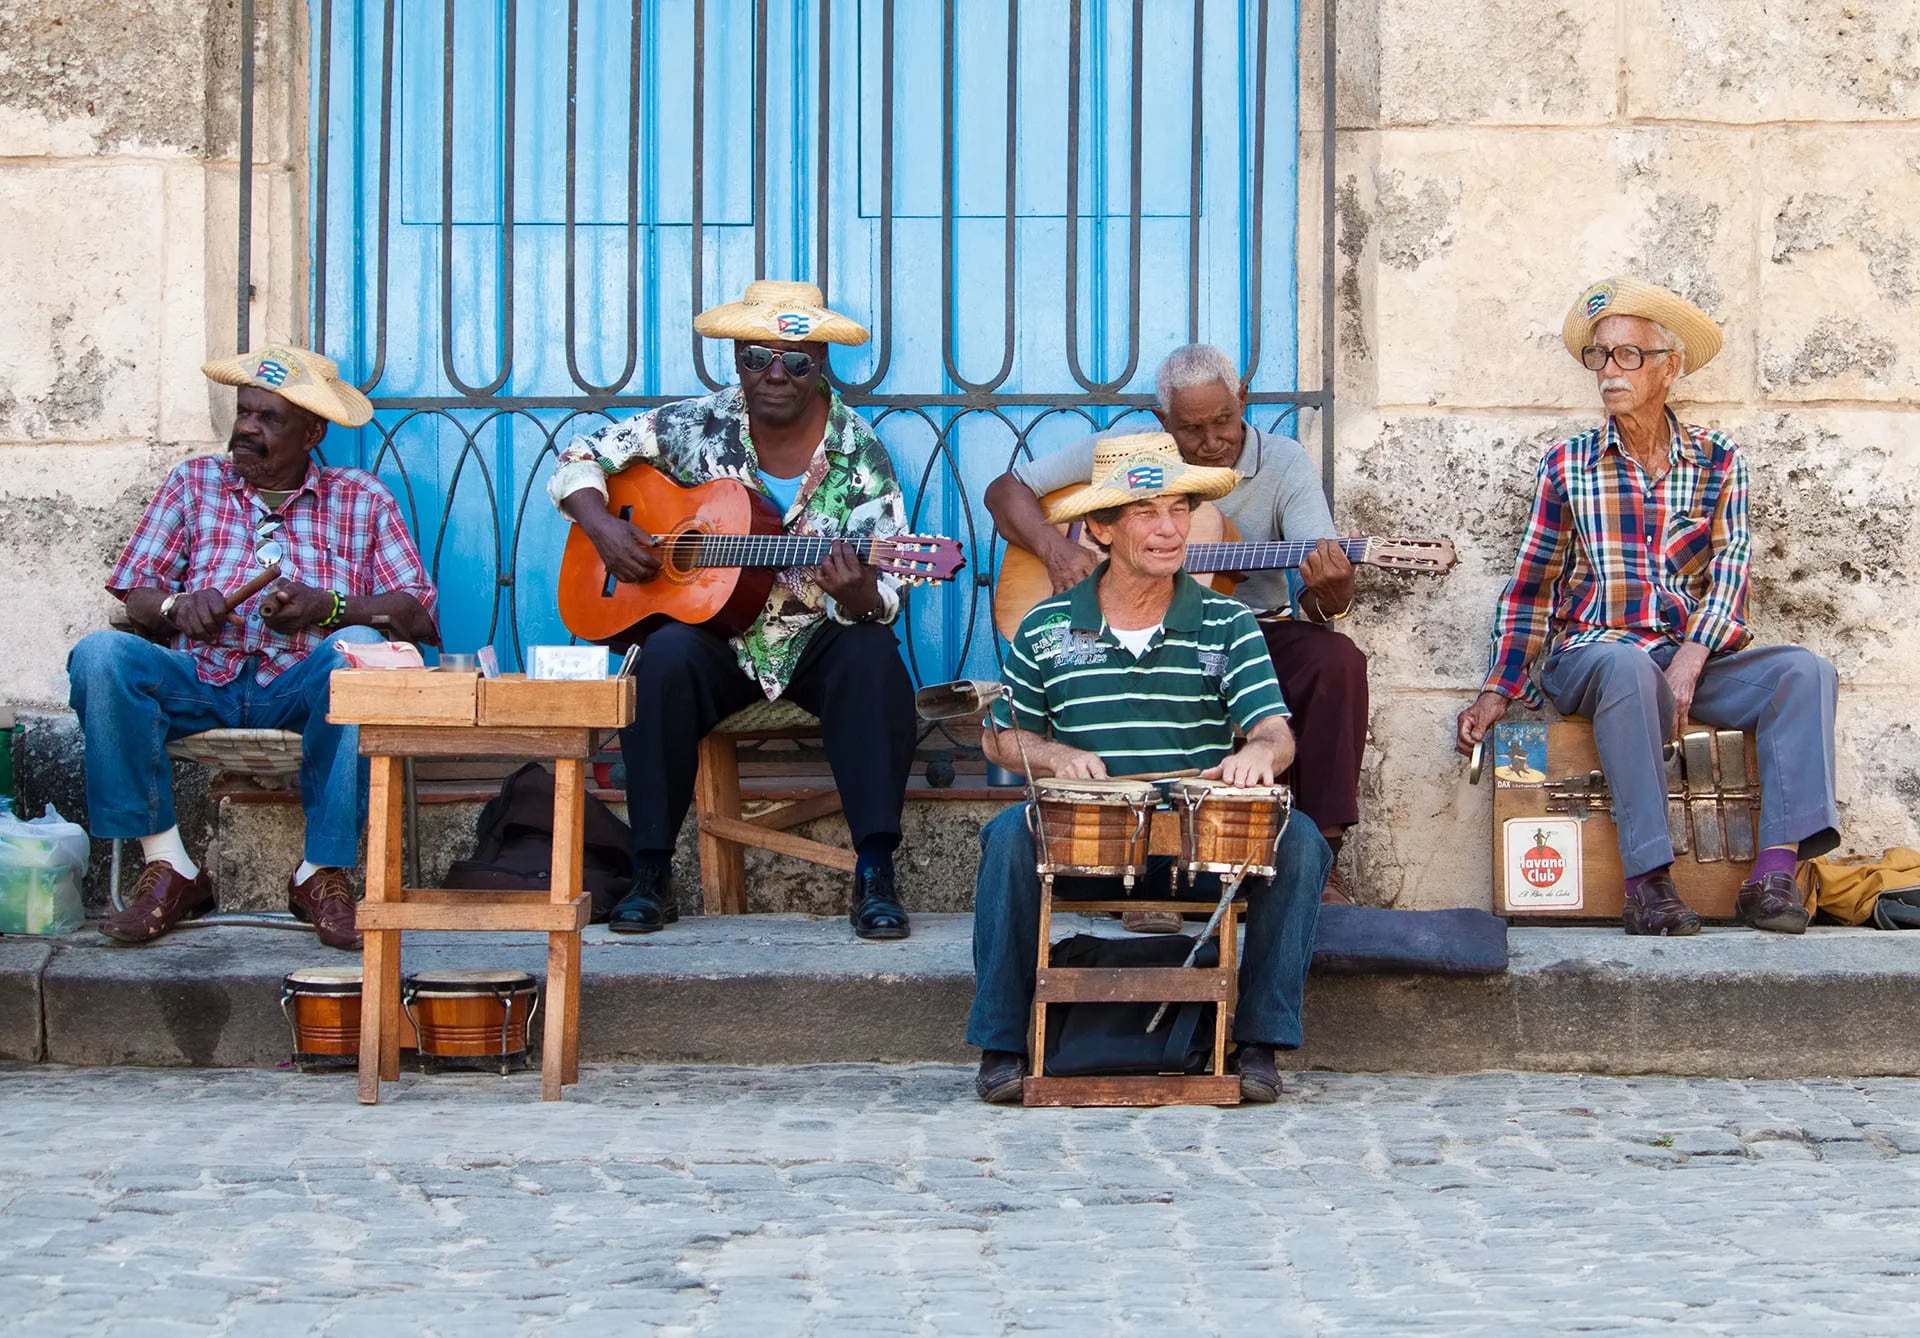 La Habana es una ciudad musical. No es necesario ir a bares y clubes para escuchar a músicos en vivo. Cerca de la Catedral, por ejemplo, se reúnen artistas callejeros los fines de semana.